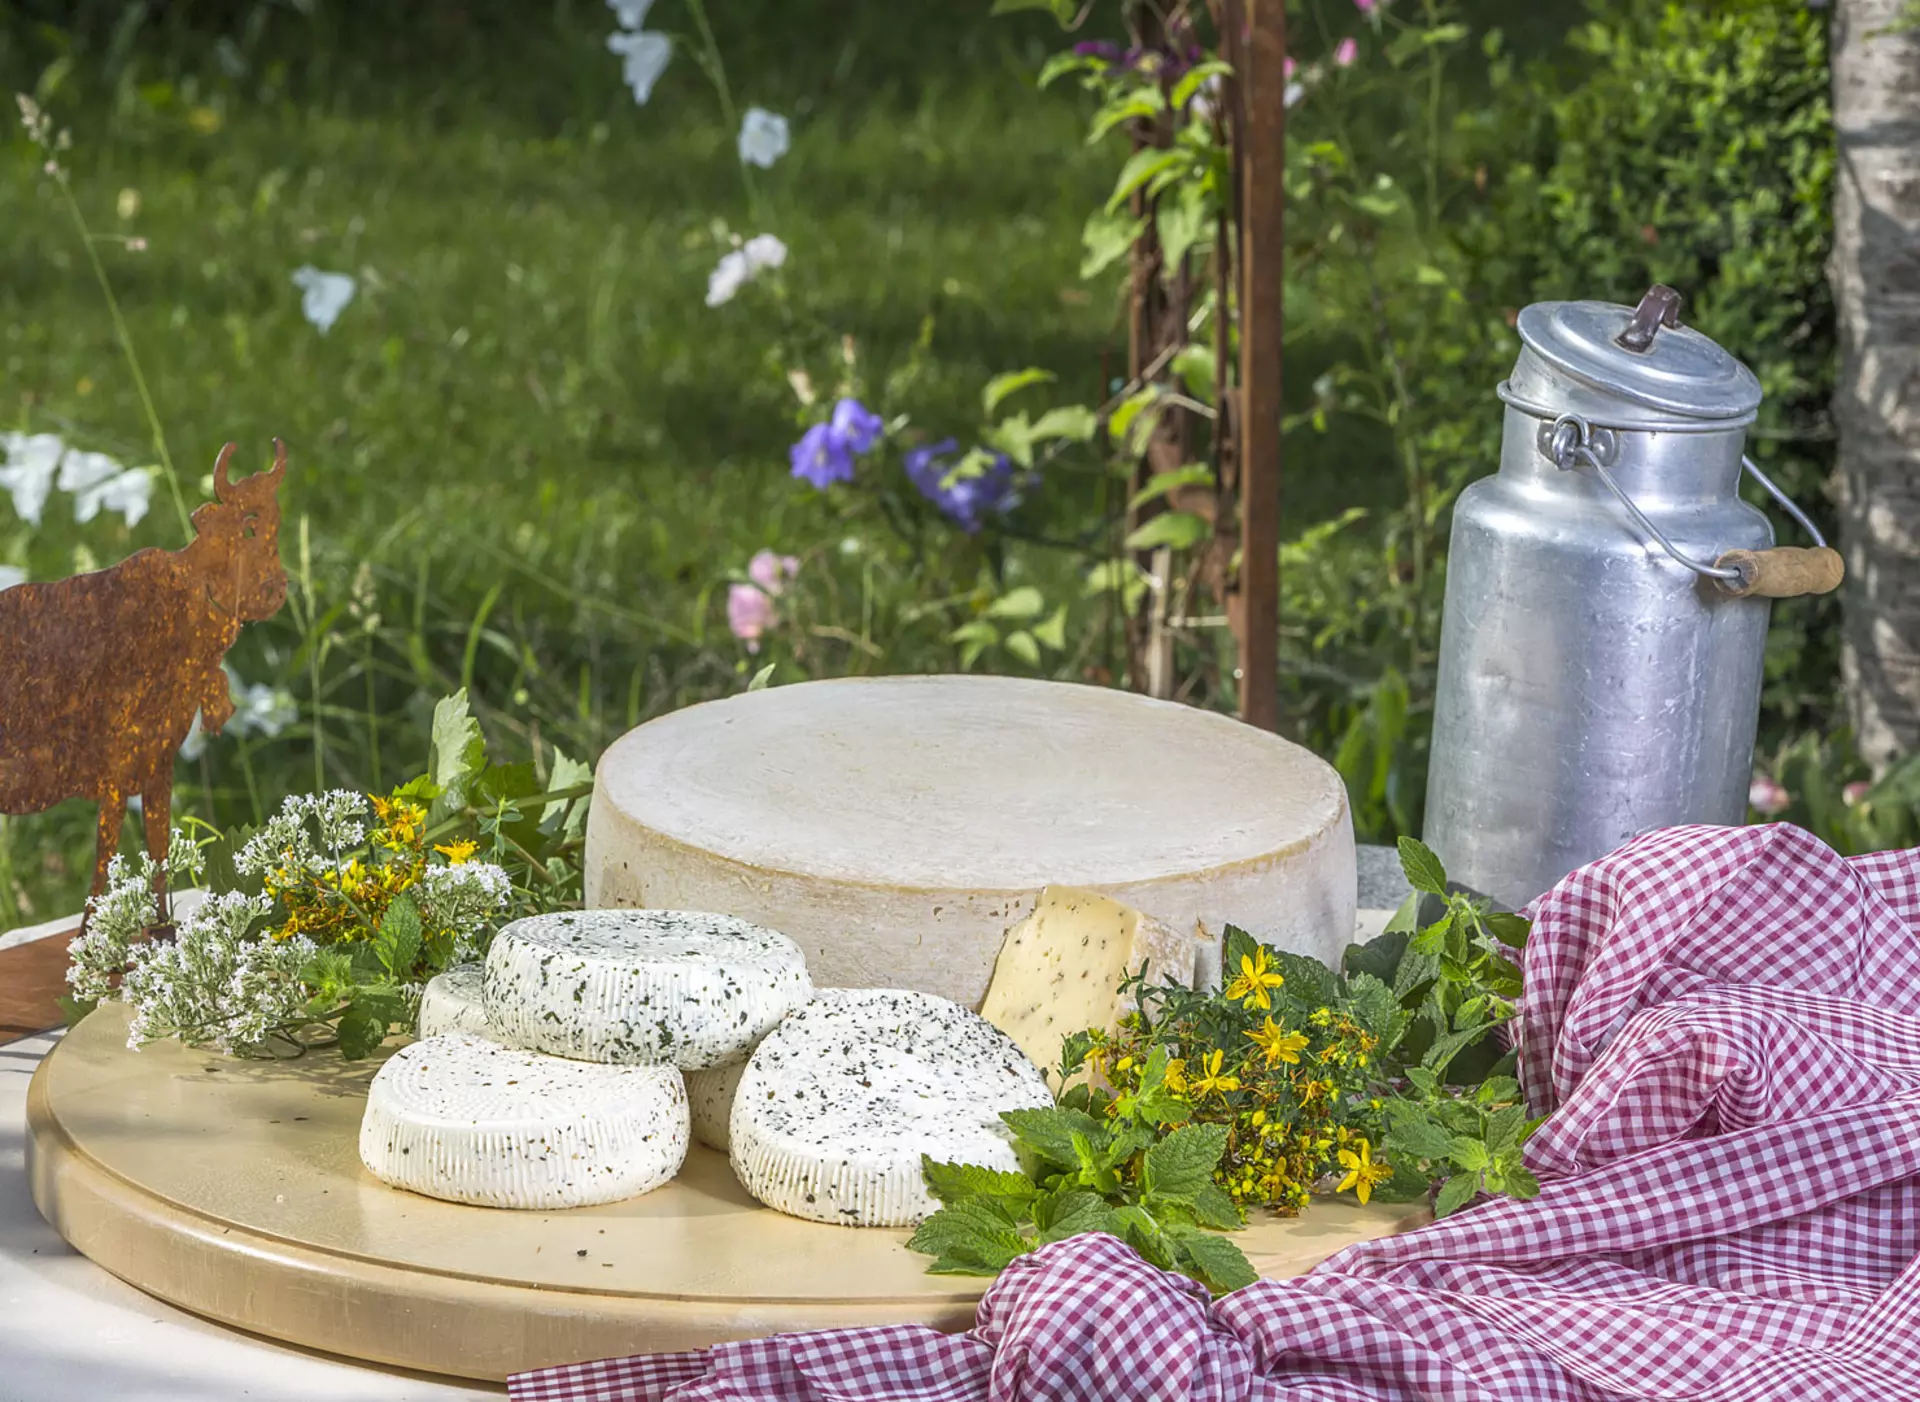 im Urlaub auf dem Biobauernhof in Bayern Käse und Milch in Bioqualität einkaufen